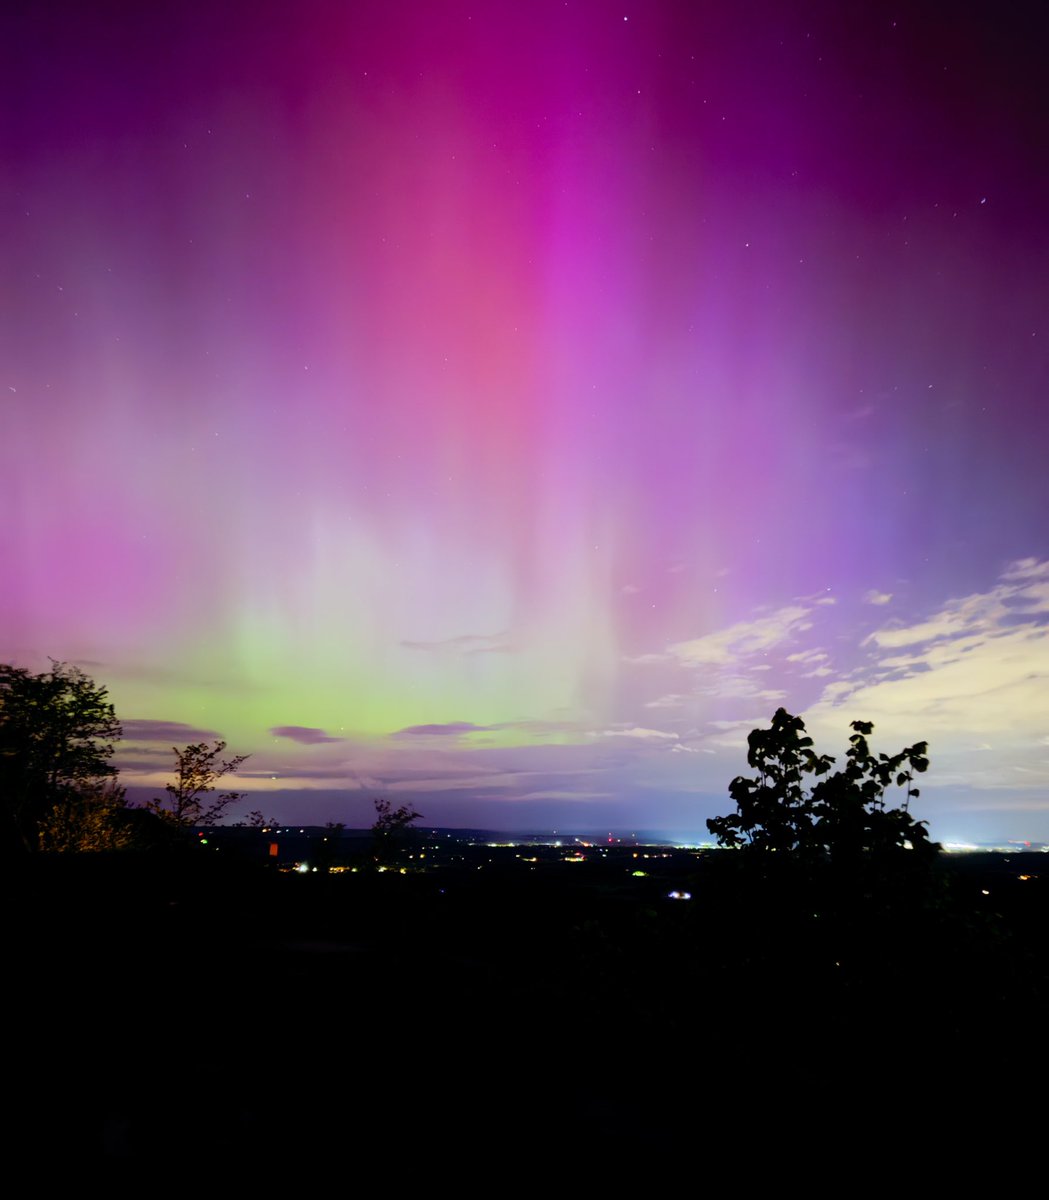 From Upstate New York tonight…
#aurora #Auroraborealis #upstateNY #RPI